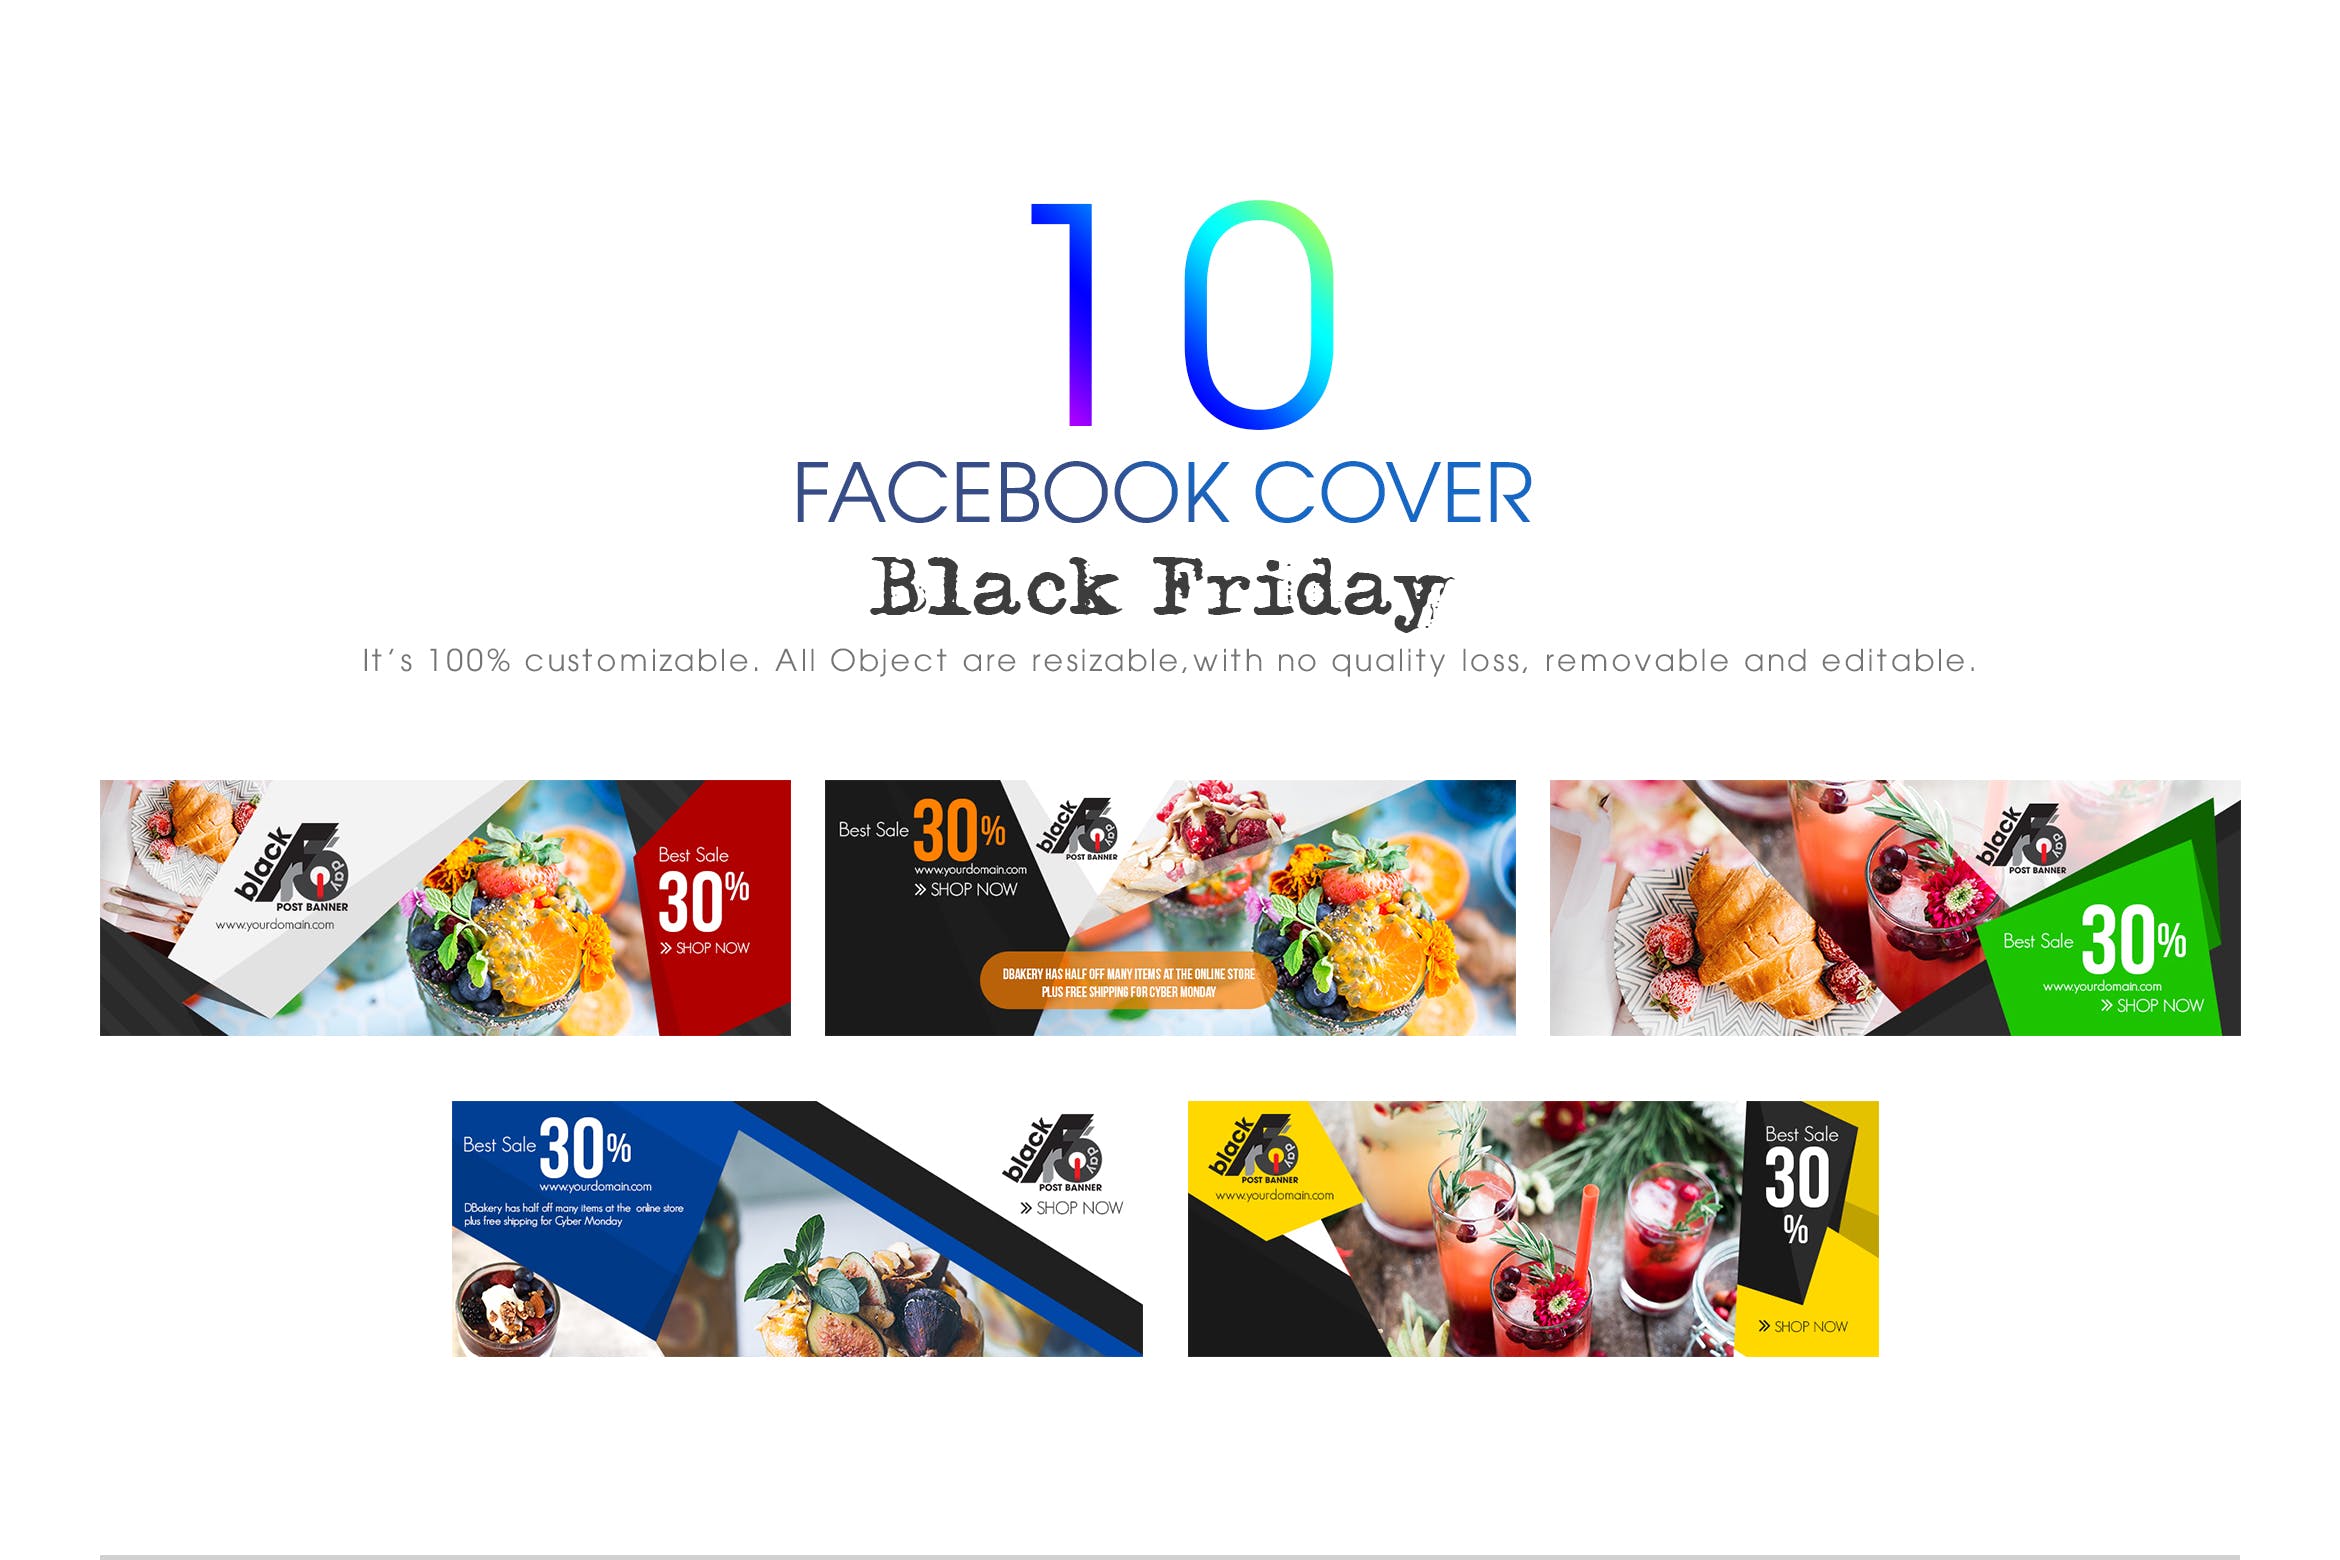 10款Facebook社交平台黒五购物广告Banner设计模板素材库精选 10 Facebook Cover-Black Friday插图